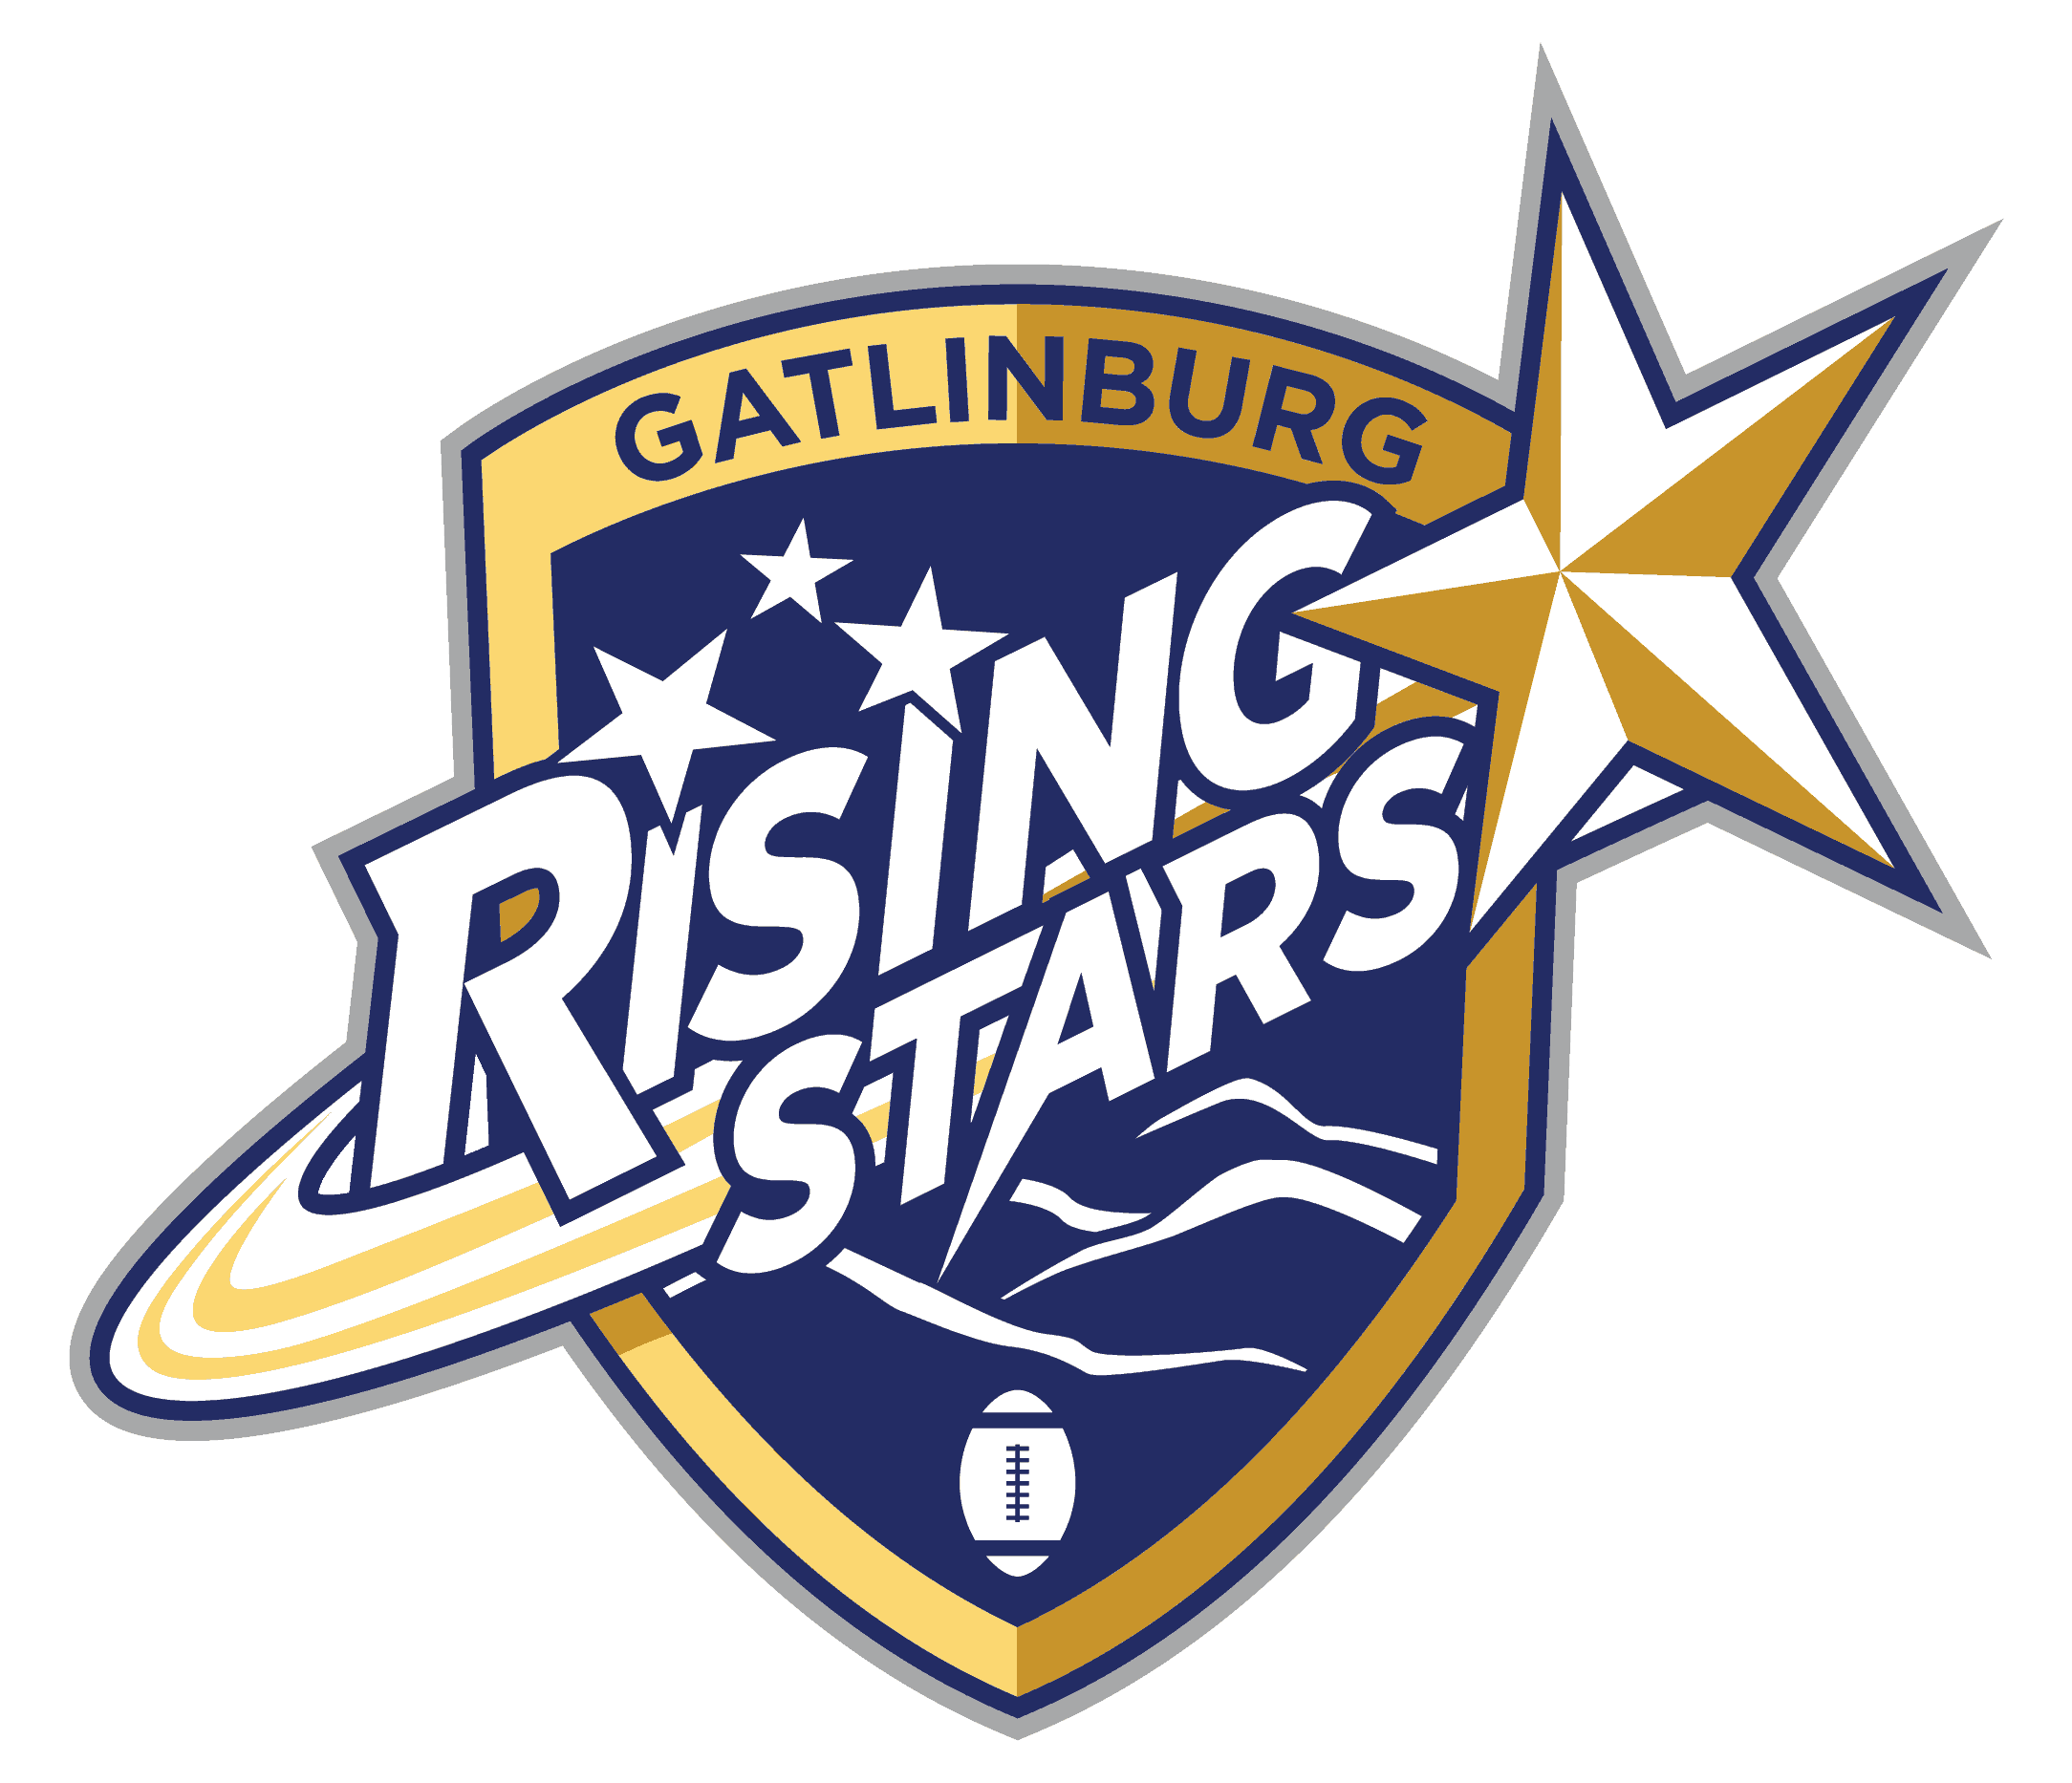 Gatlinburg Rising Stars logo